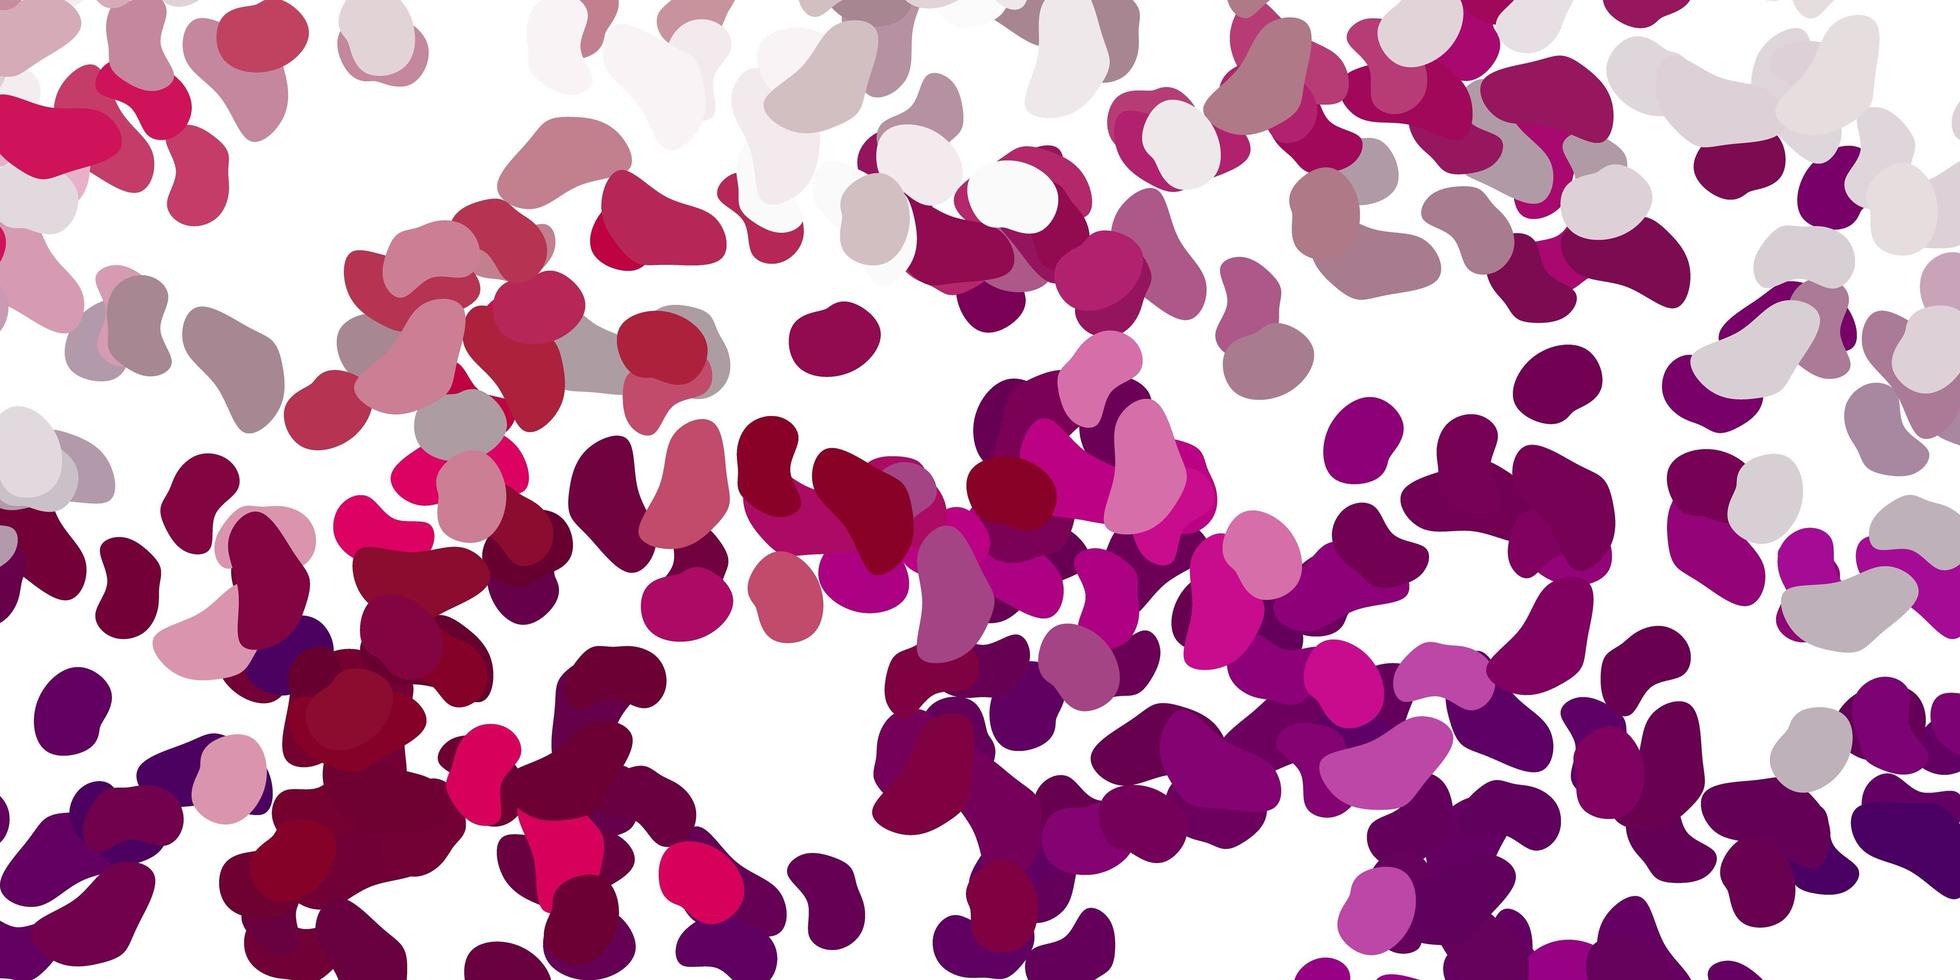 modèle vectoriel violet clair avec des formes abstraites.